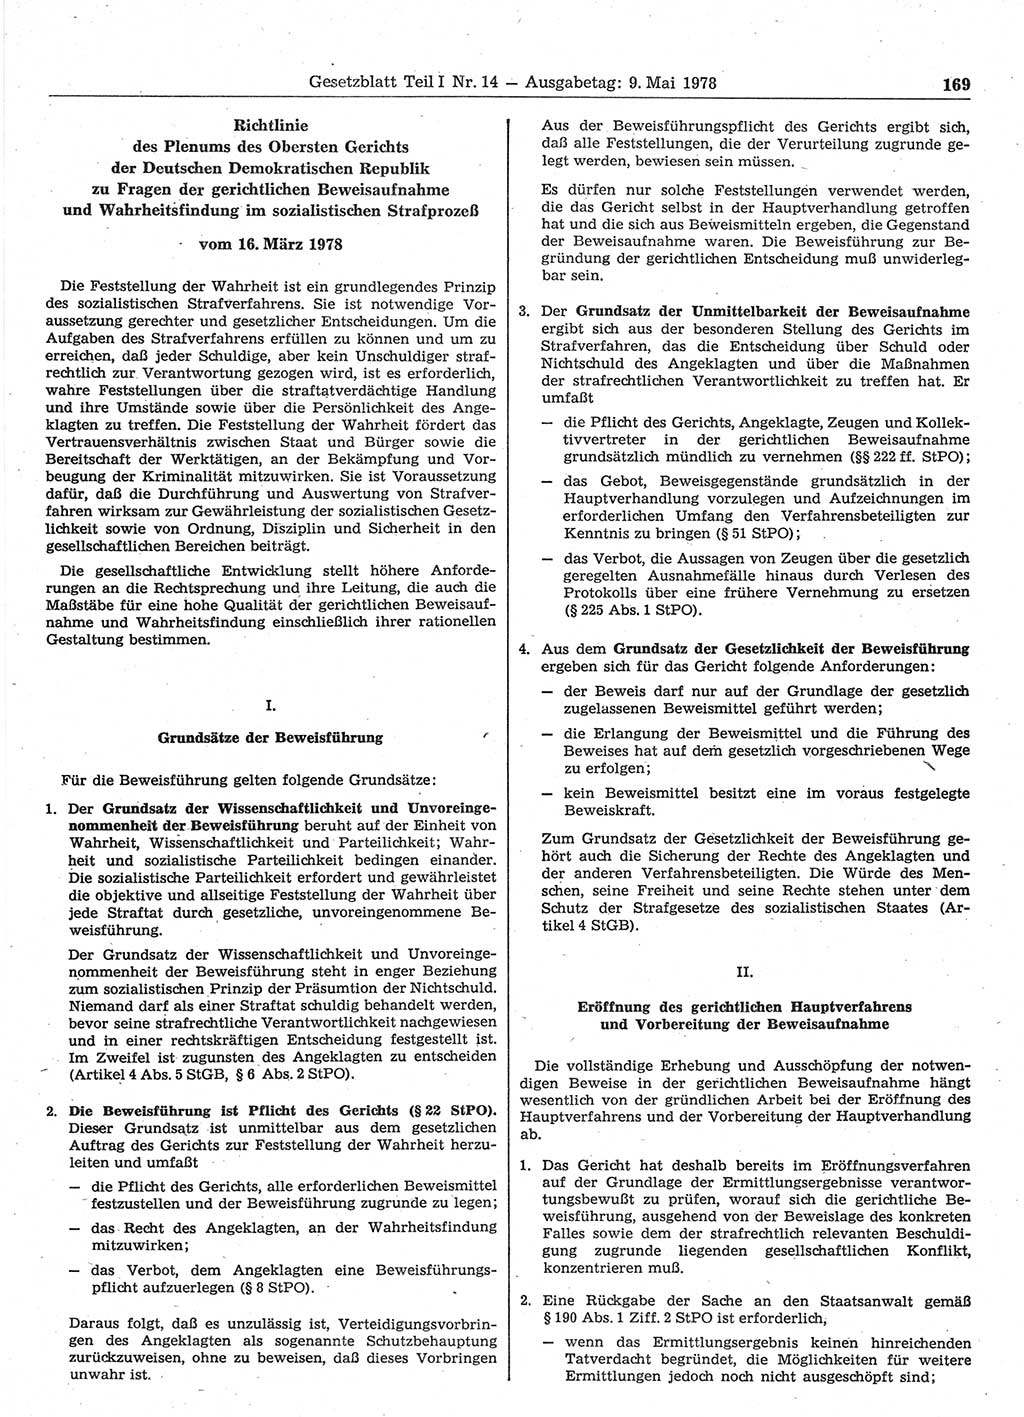 Gesetzblatt (GBl.) der Deutschen Demokratischen Republik (DDR) Teil Ⅰ 1978, Seite 169 (GBl. DDR Ⅰ 1978, S. 169)